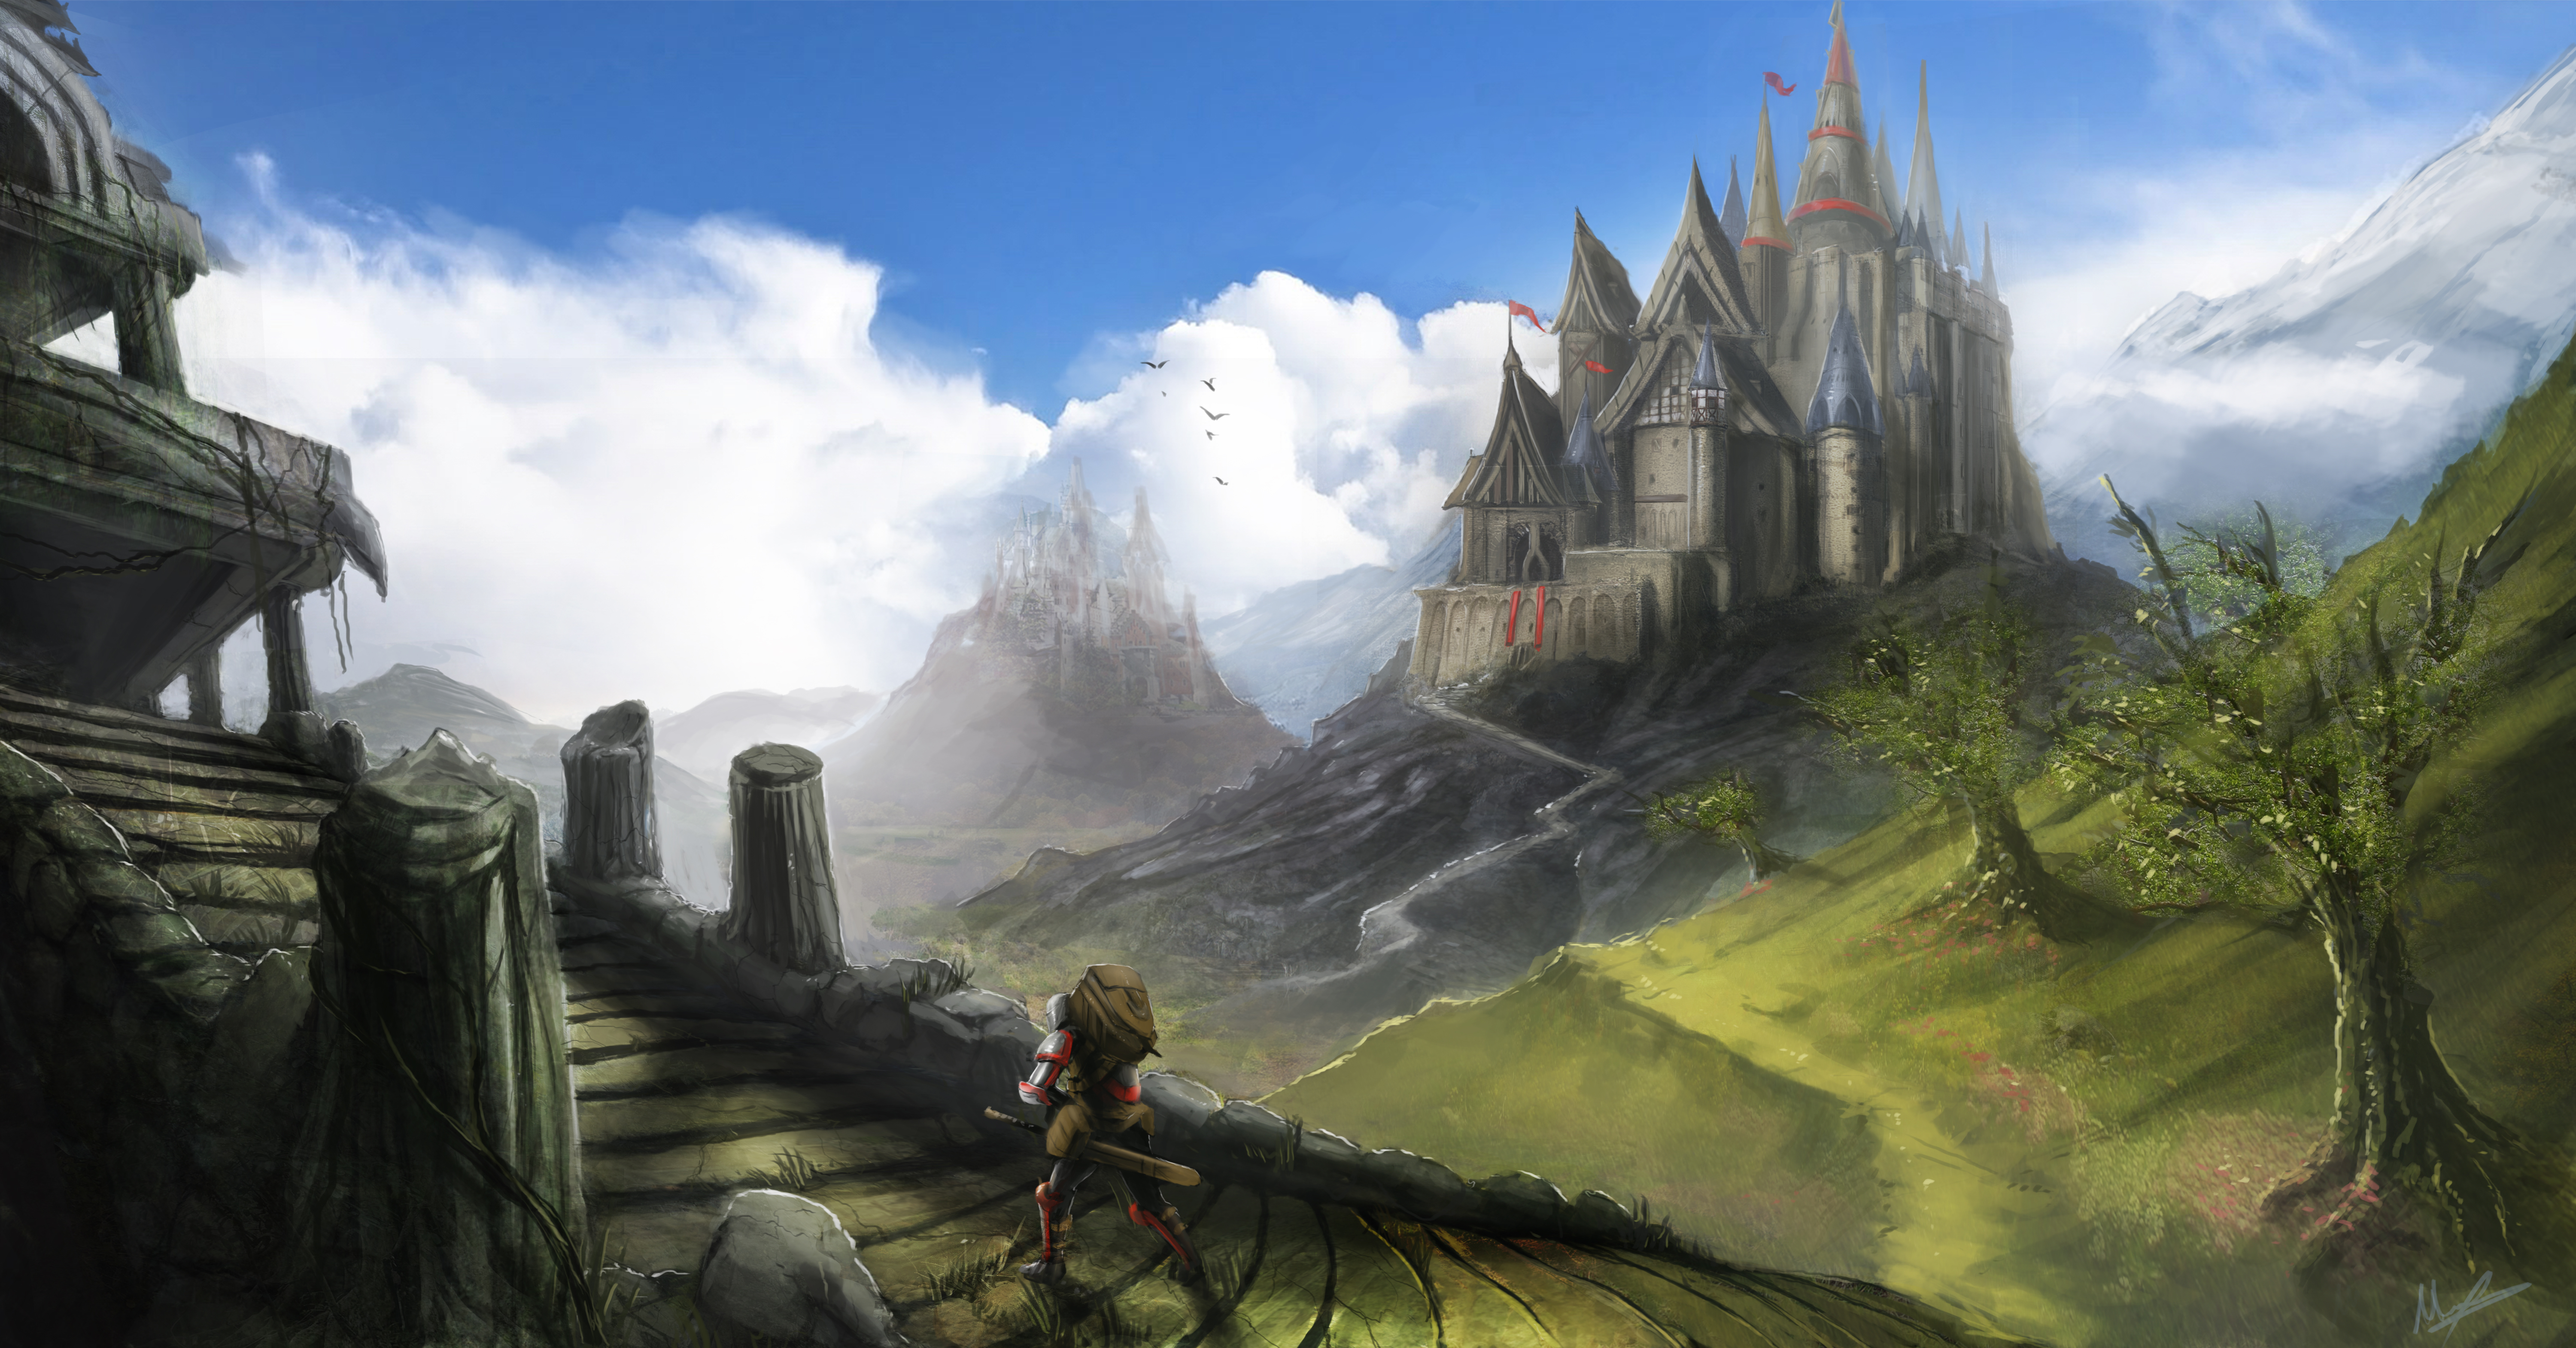 Fantasy Landscape2 by ramhak on DeviantArt